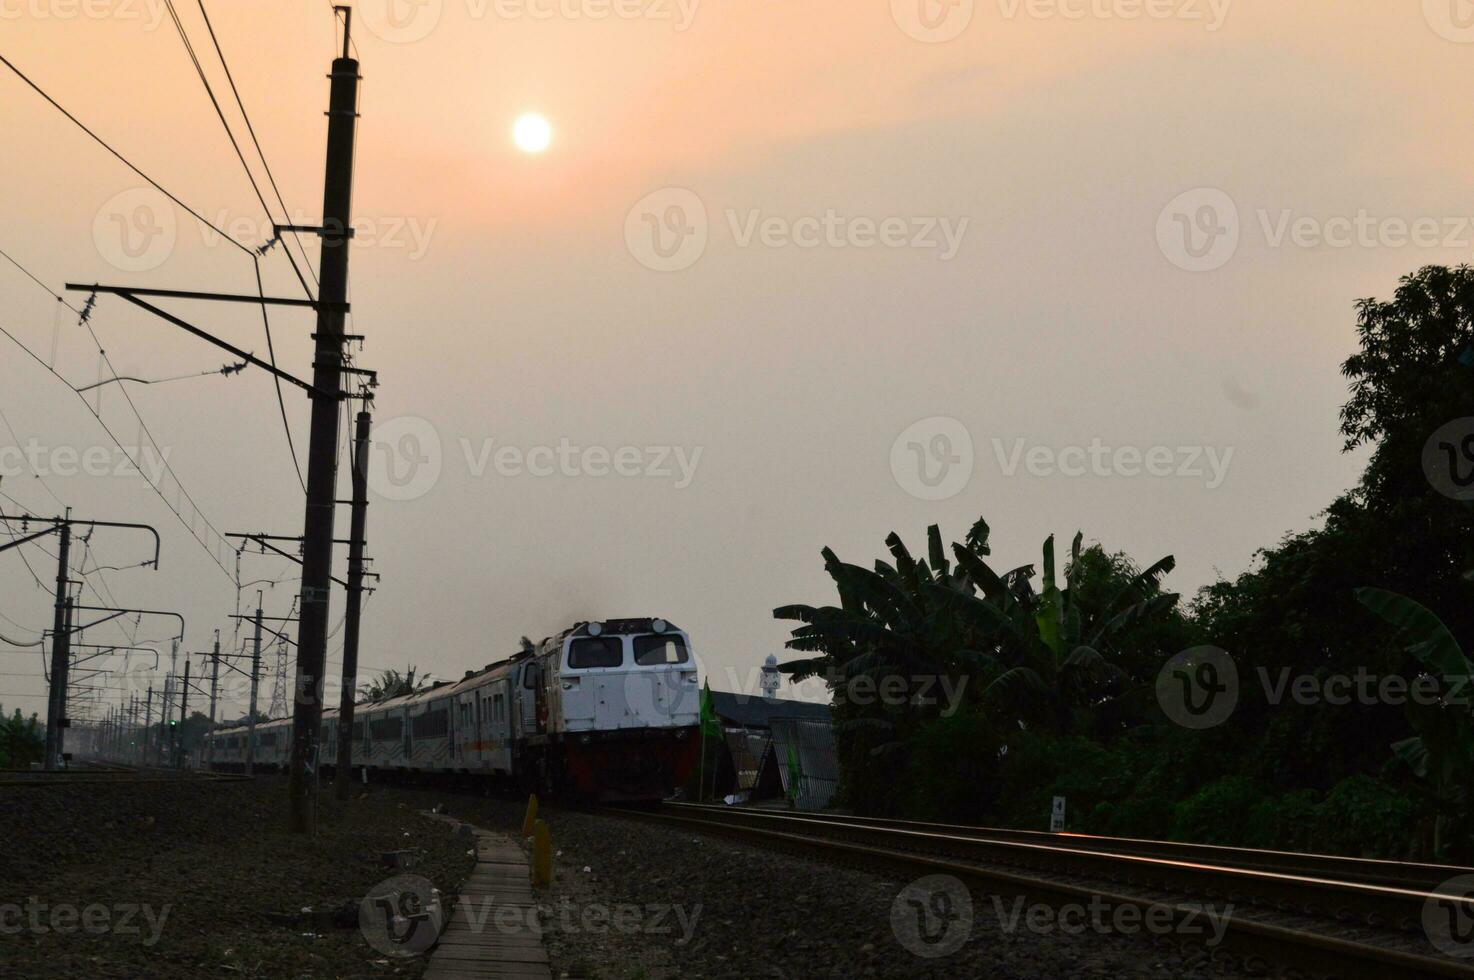 viajero diario al trabajo línea o eléctrico tren en Jacarta, Indonesia foto